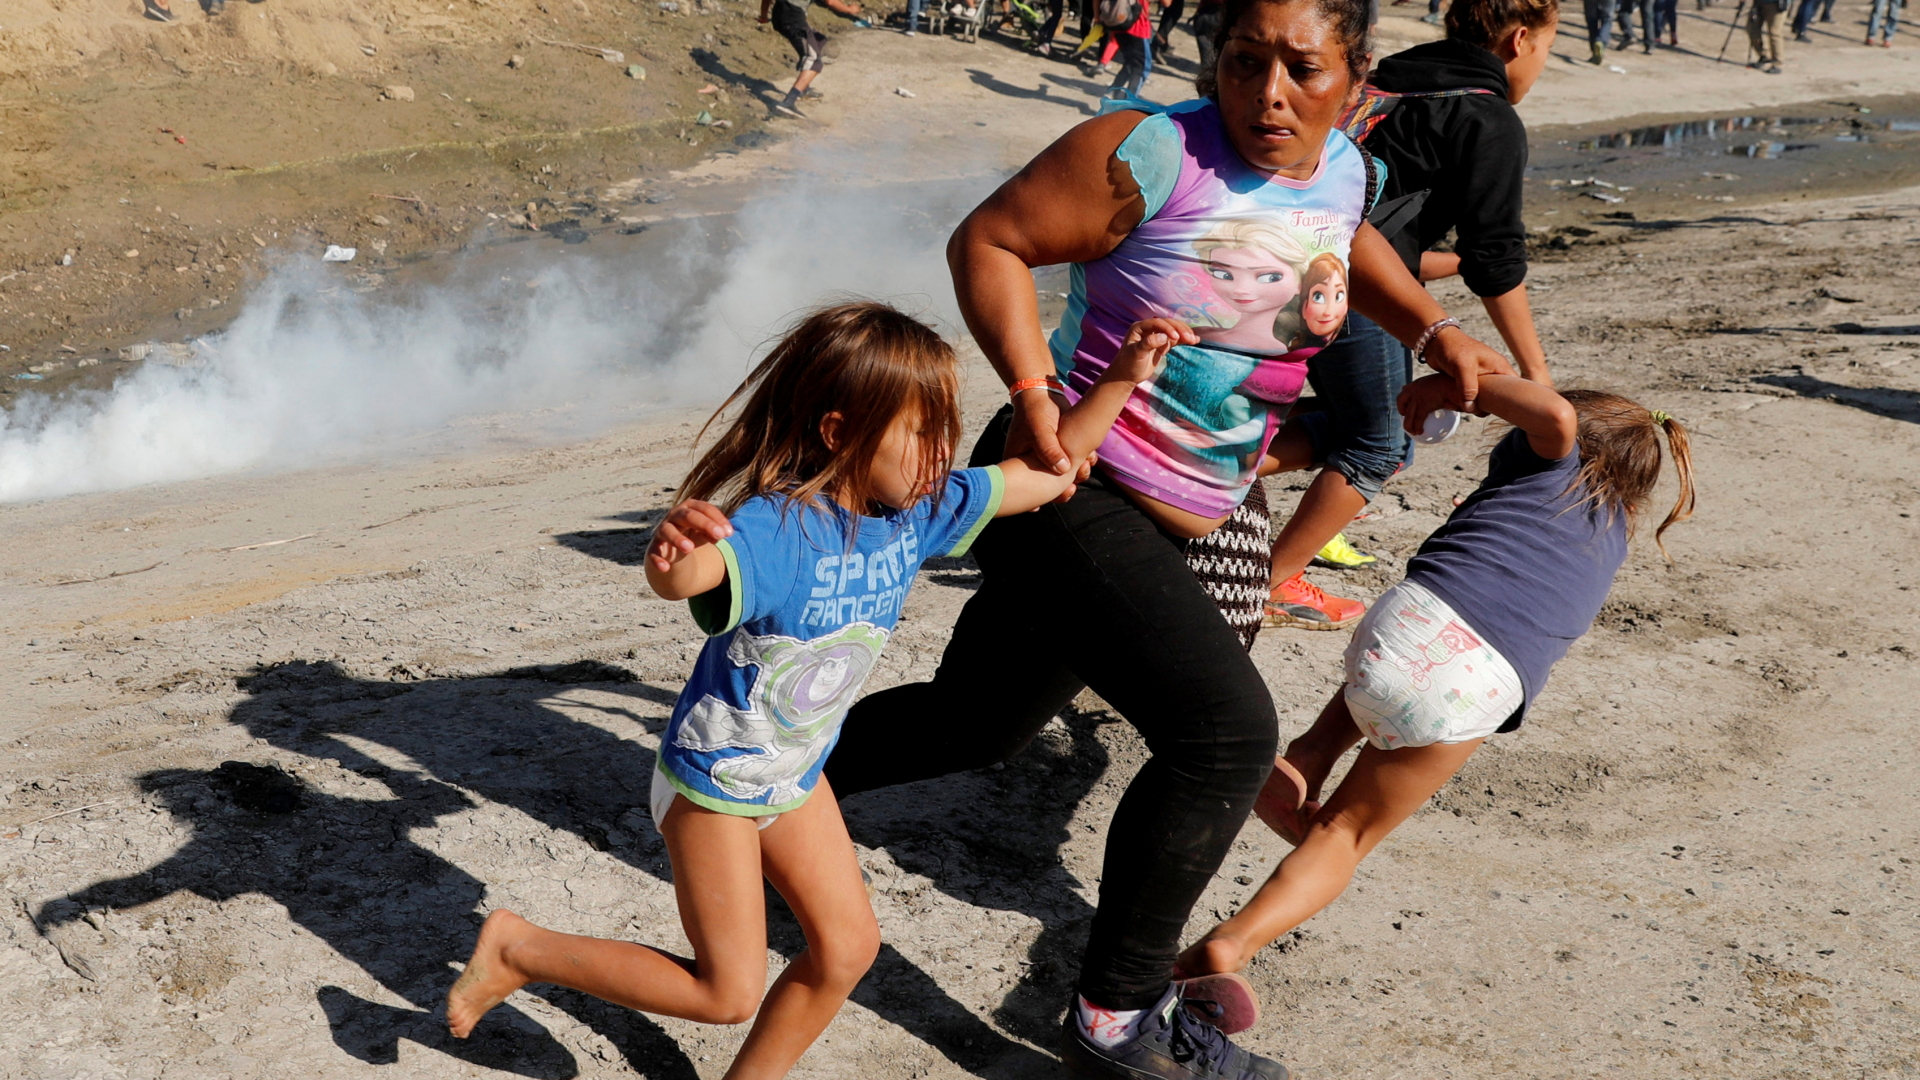 Mutter mit Töchtern nach Tränengaseinsatz an der Grenze zwischen Mexiko und den USA | Bildquelle: REUTERS